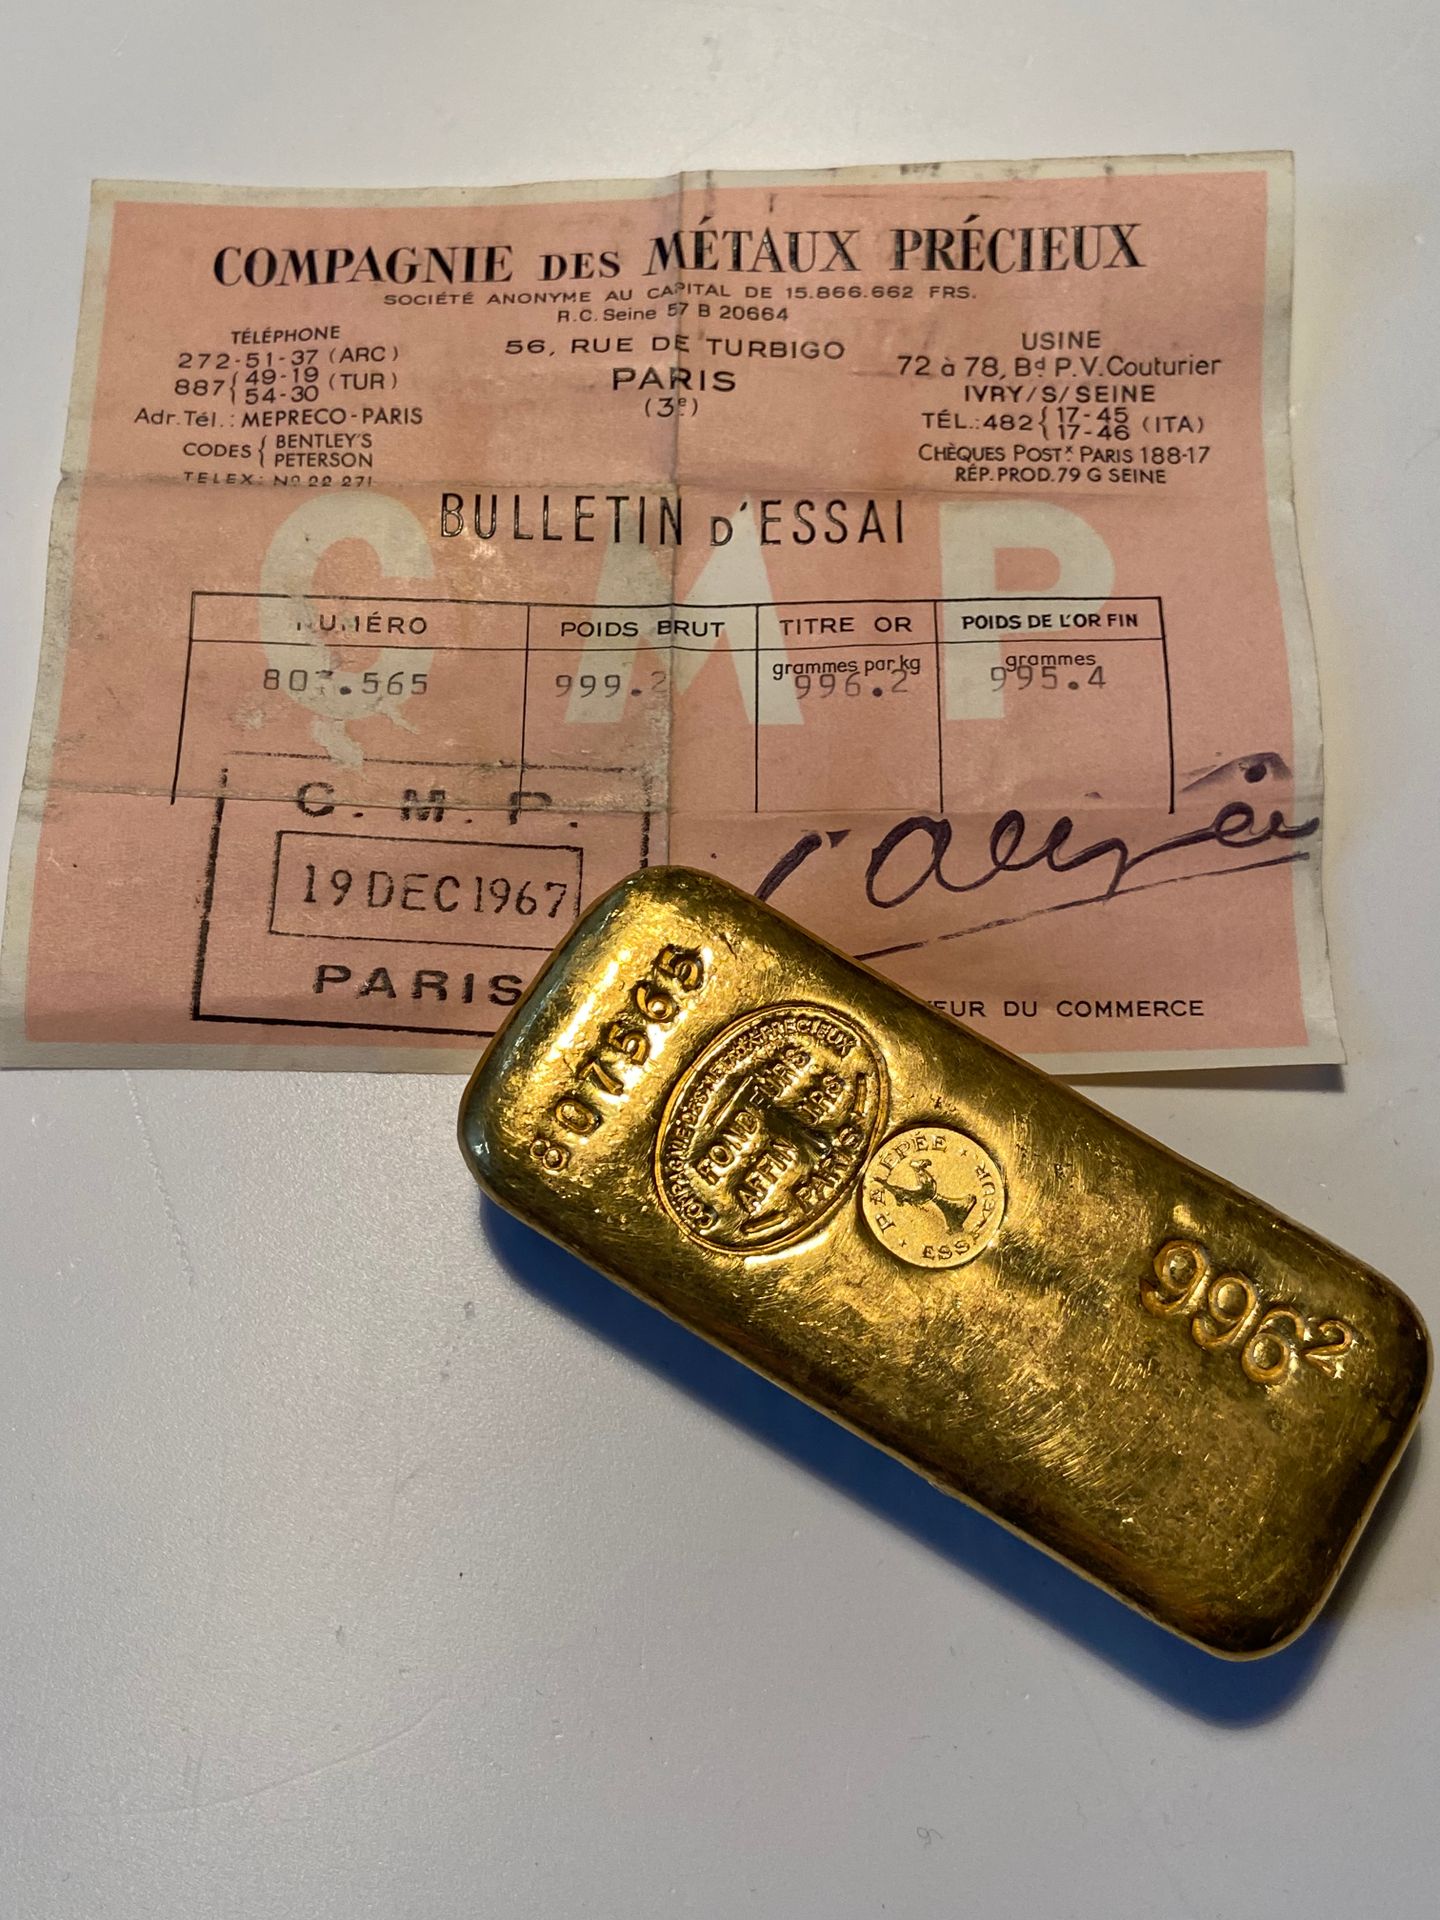 Null 
Un lingote de oro con el número 807565, peso bruto 999,2 gr.
Certificado d&hellip;